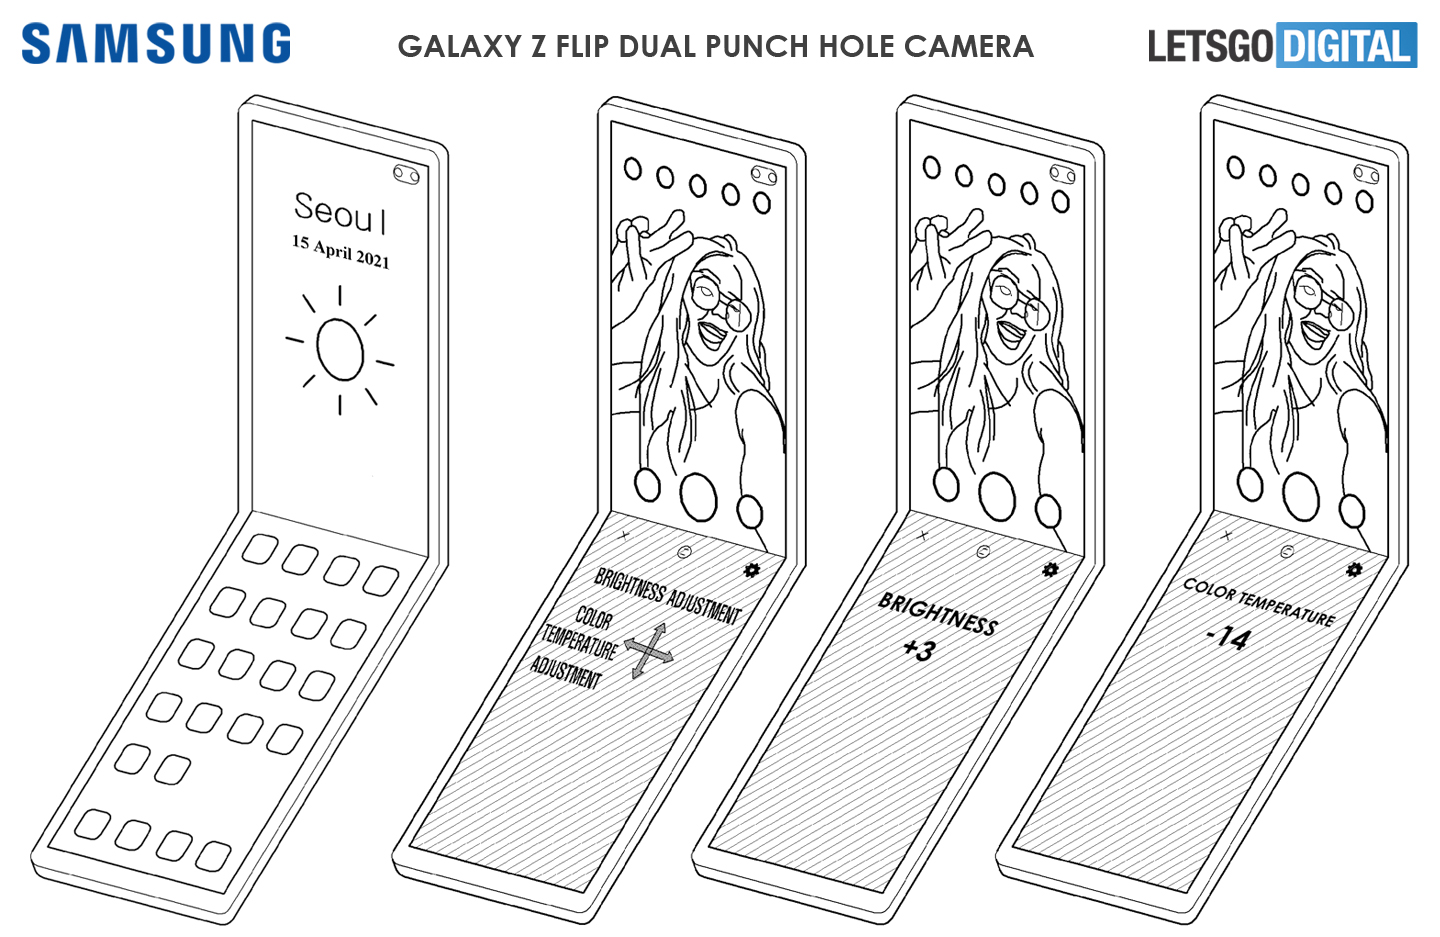 Galaxy Z Flip dual punch hole camera